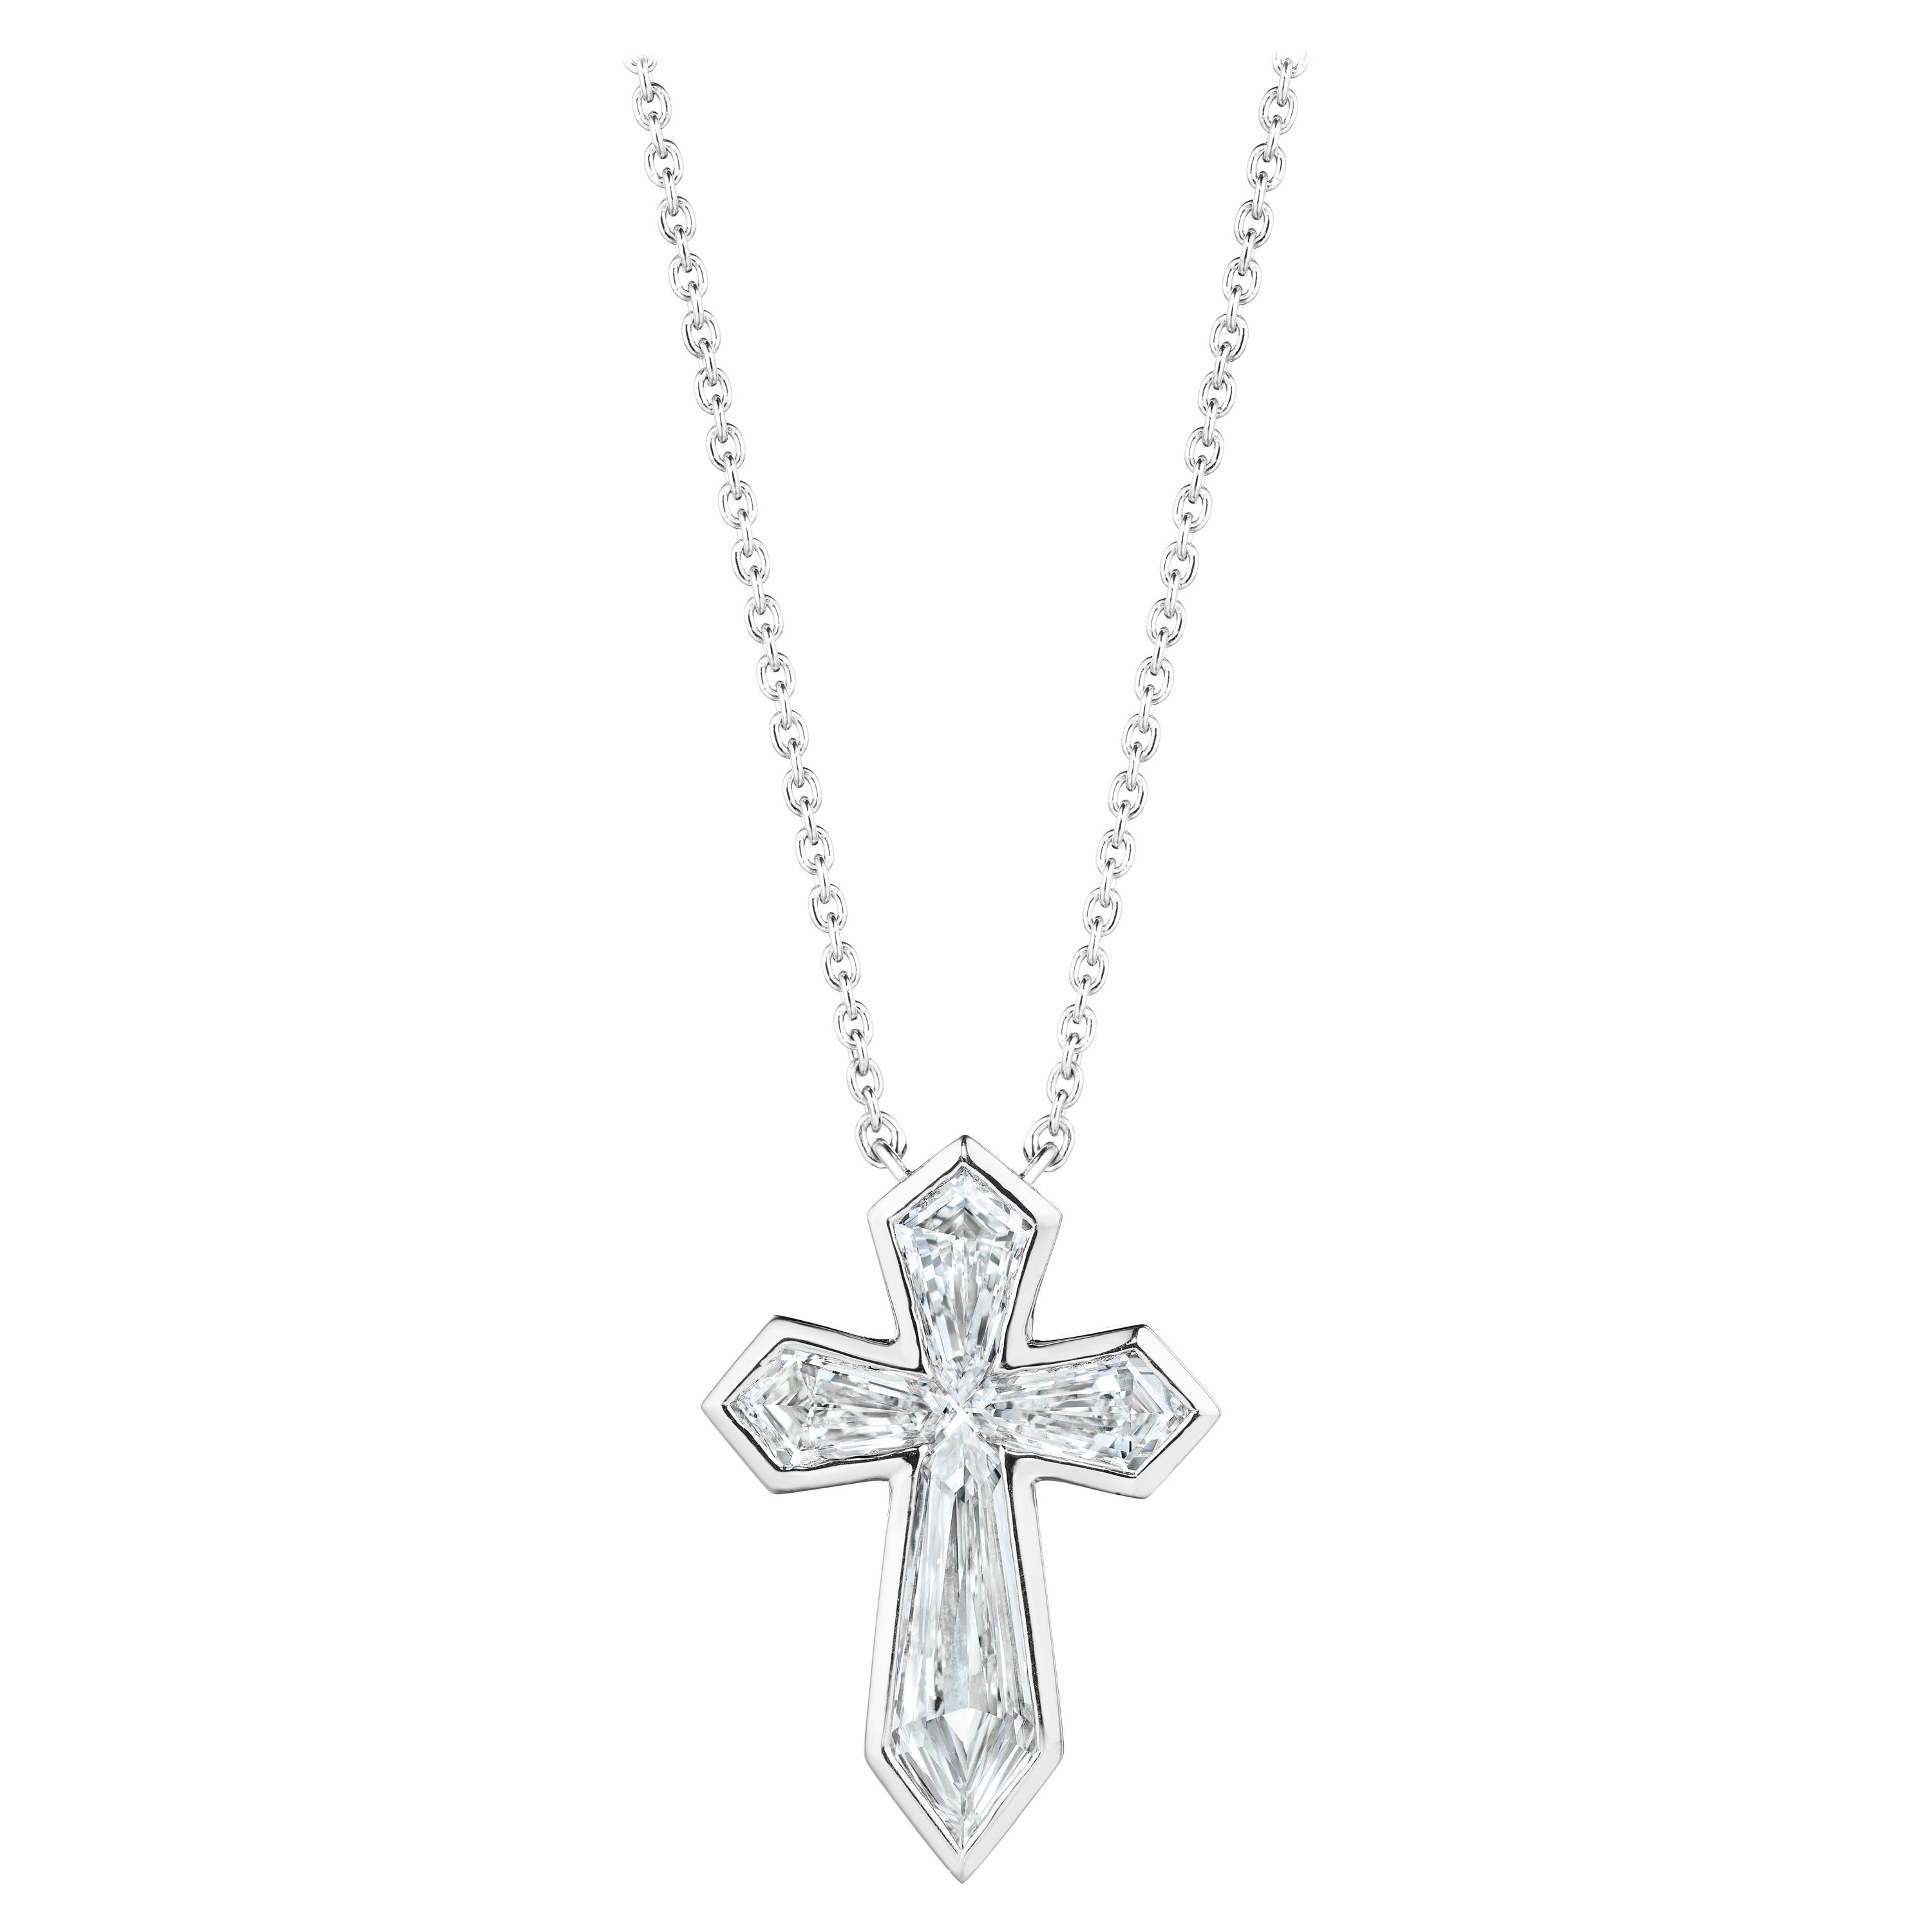 Unique 1.62 Carat Diamond Kite Cross in Platinum Bezel